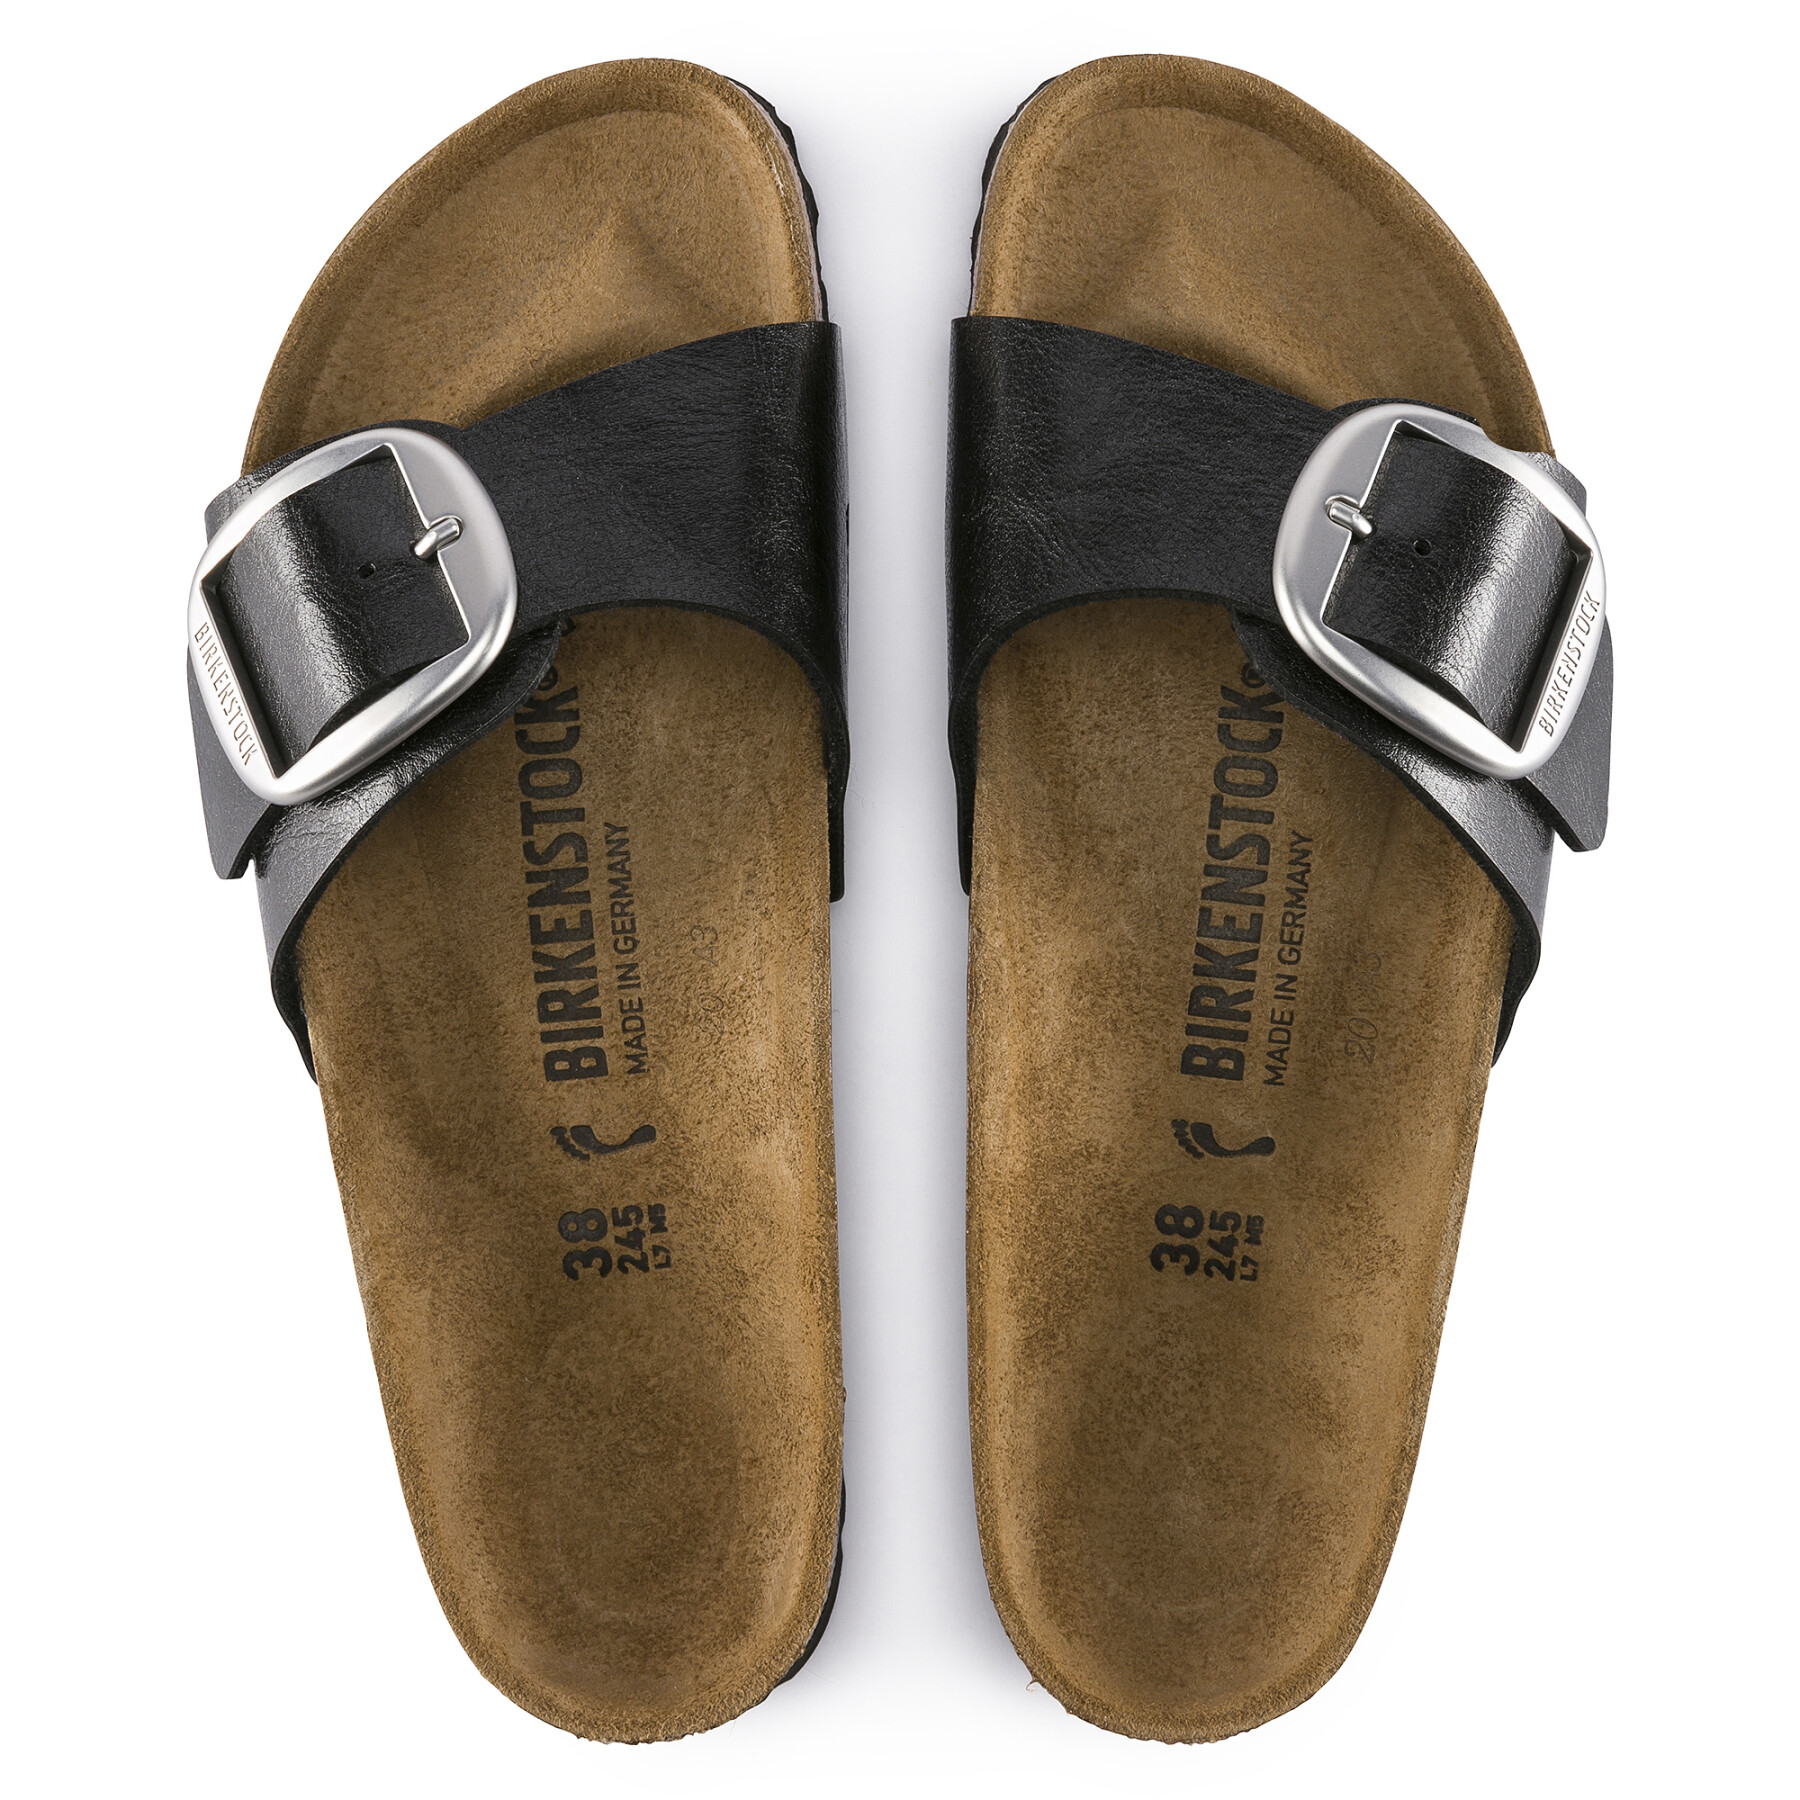 Women's narrow sandals Birkenstock Madrid Big Buckle Birko-Flor